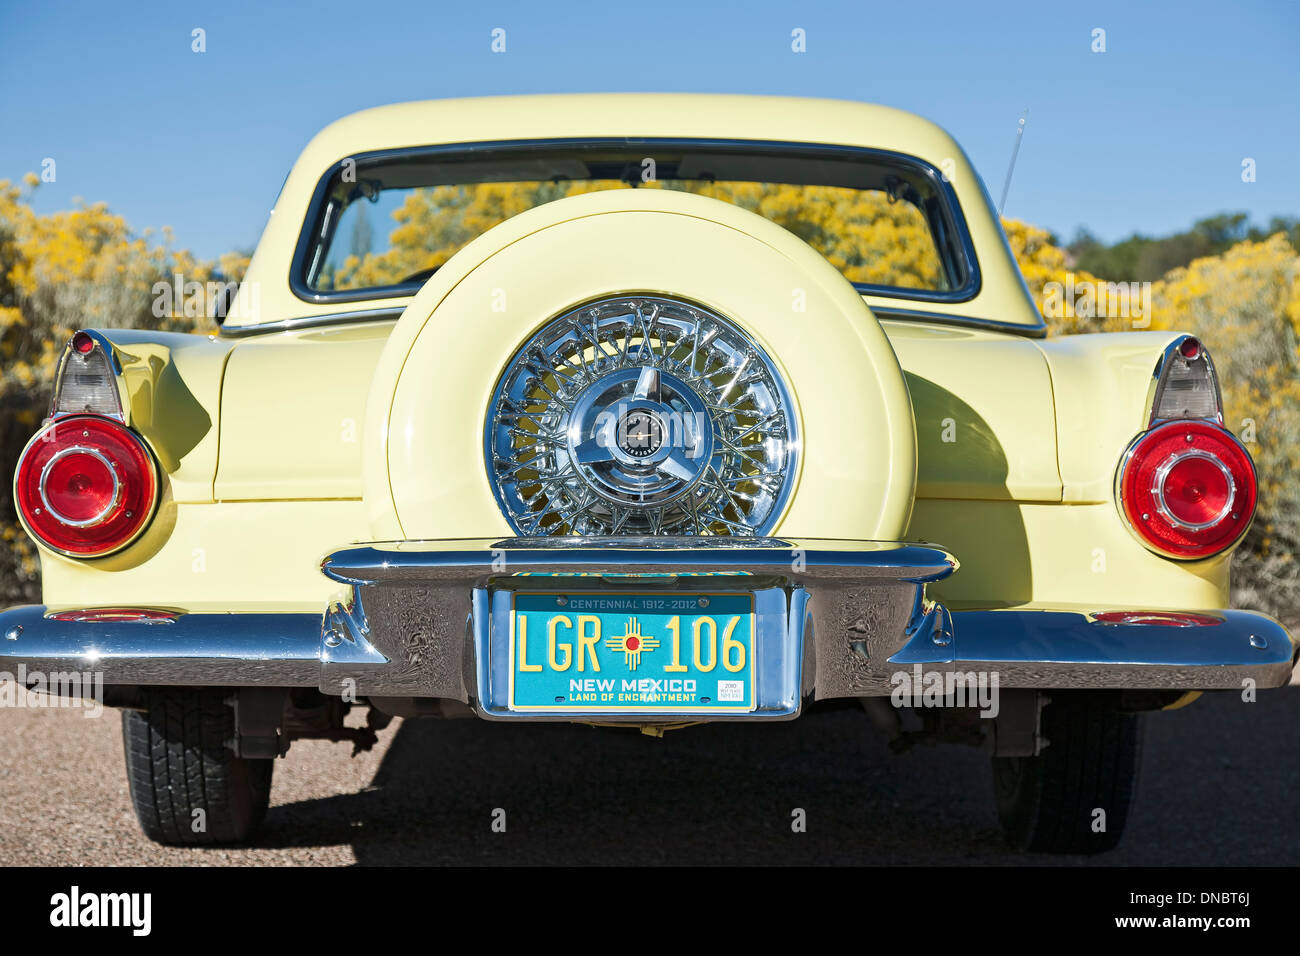 1956 Ford Thunderbird, Santa Fe, New Mexico USA Stock Photo